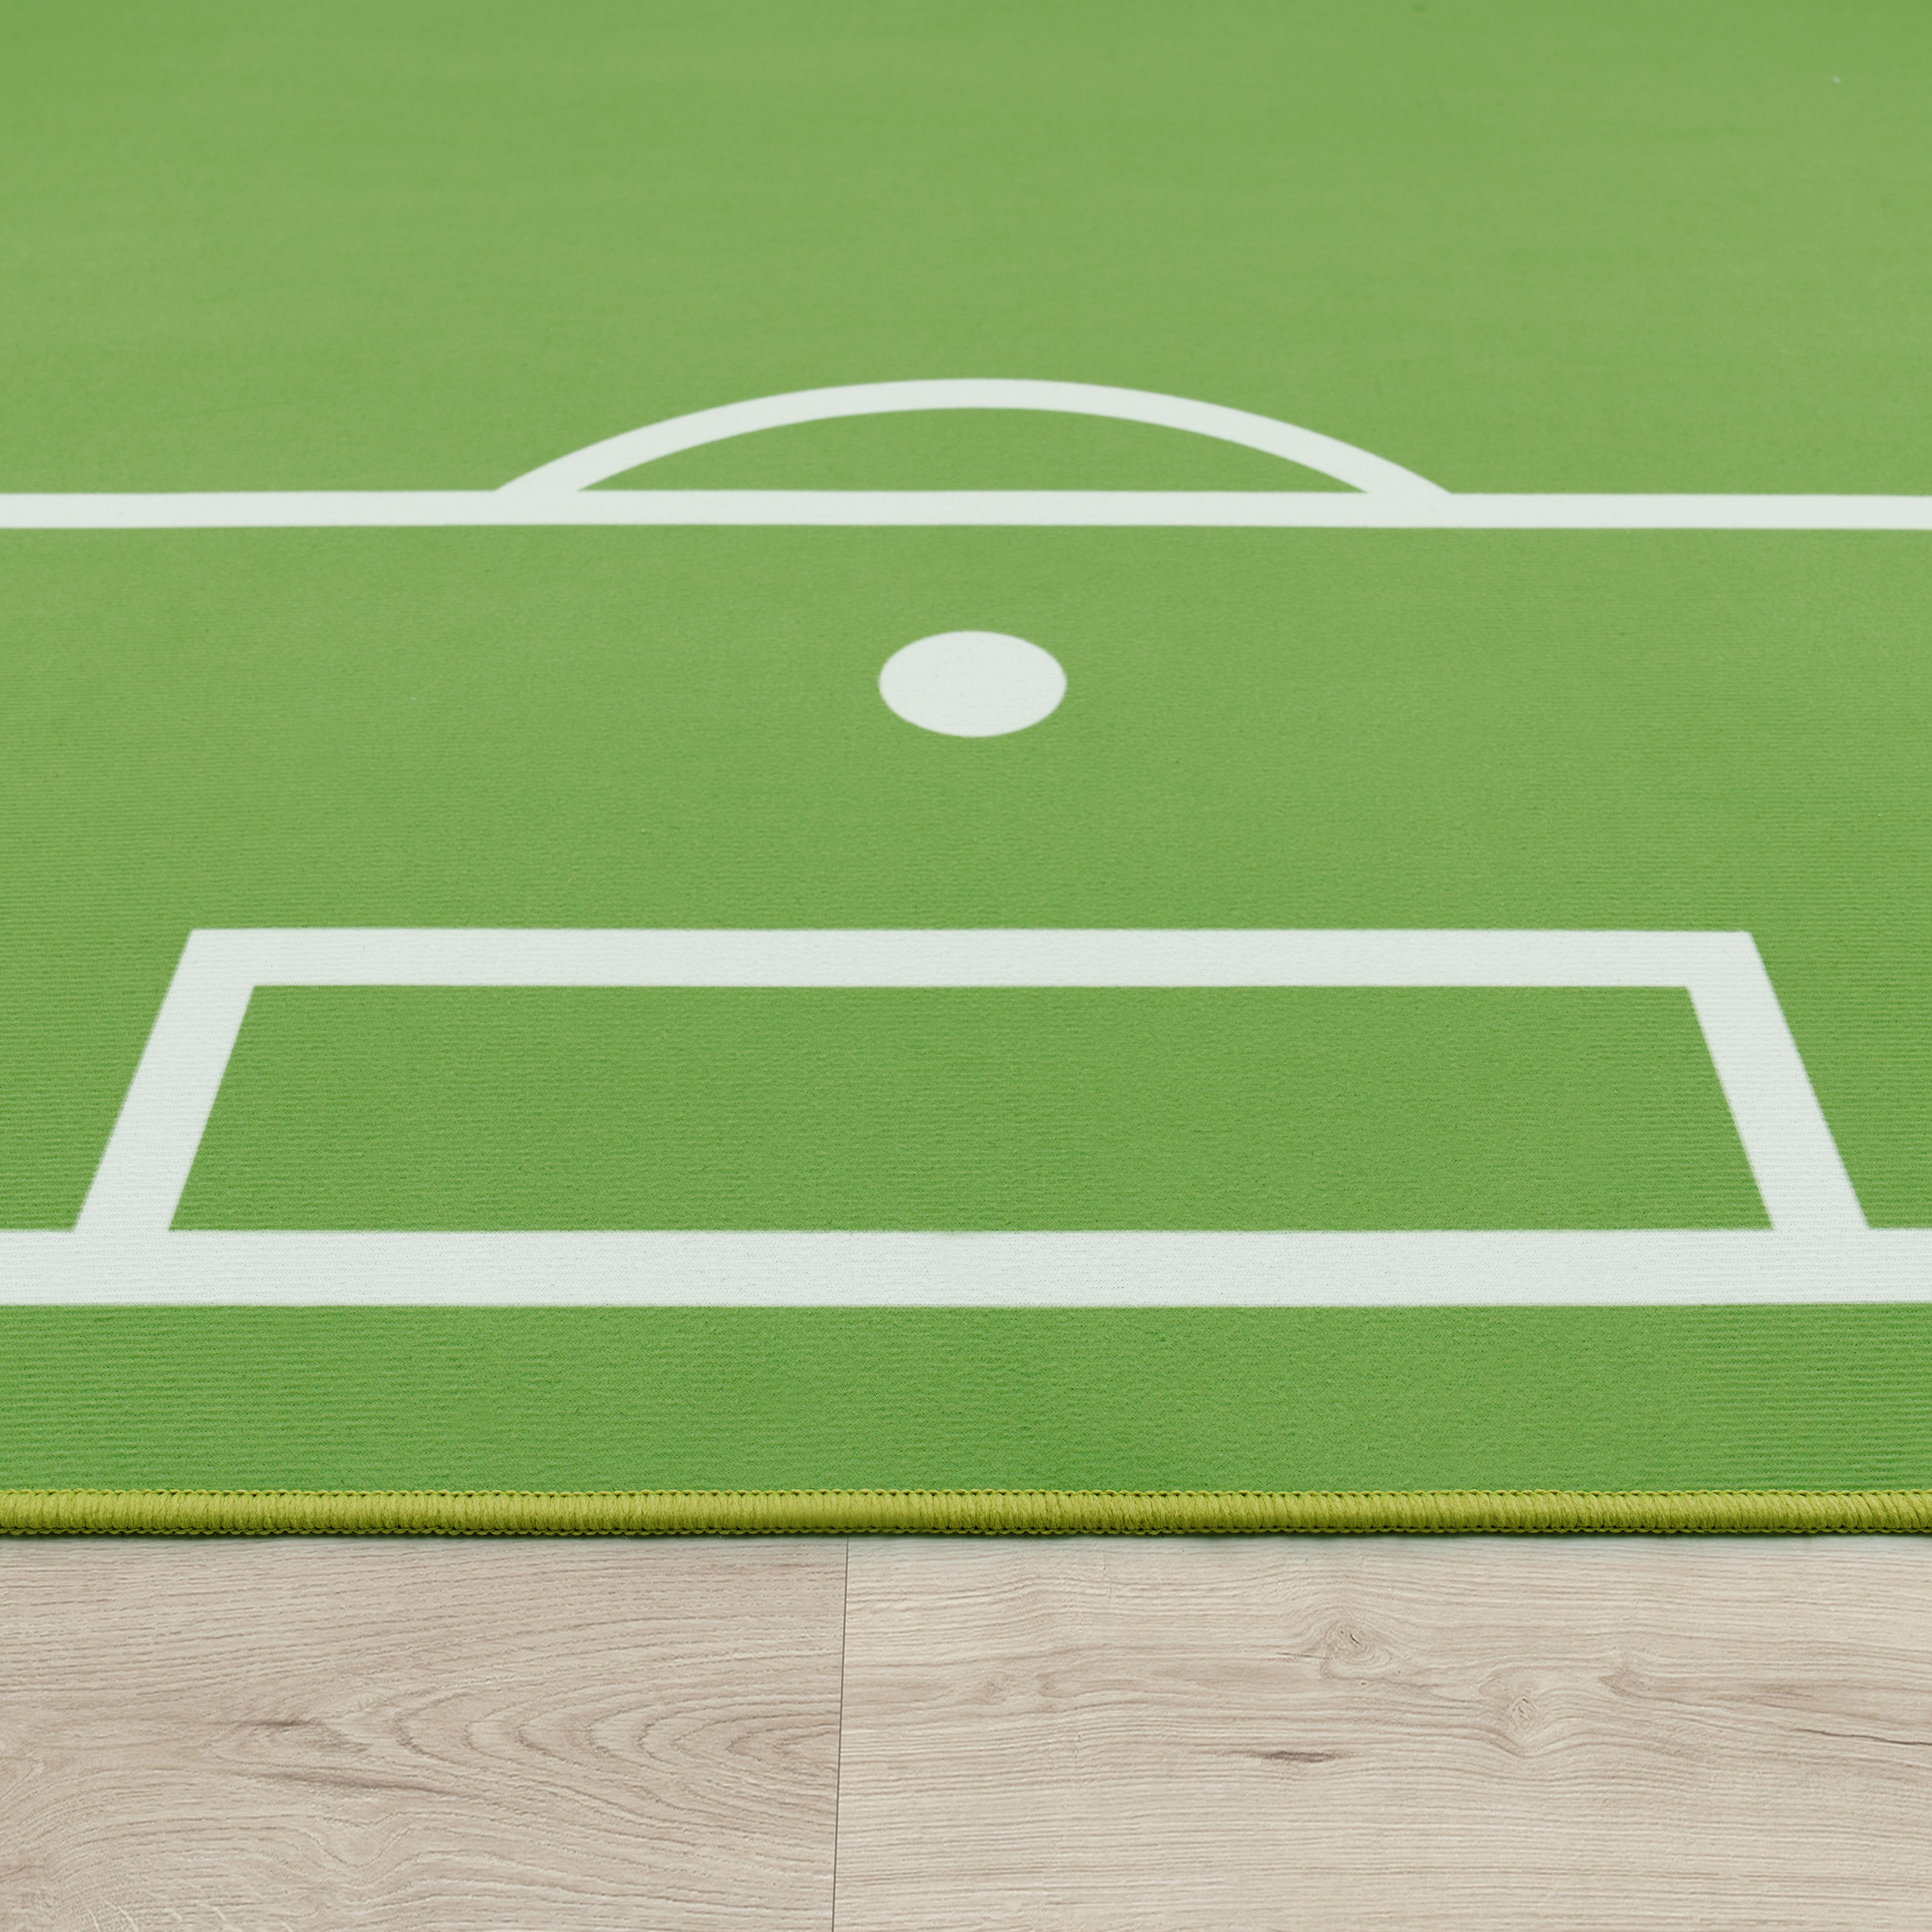 Kinder-Teppich Kinderzimmer Fußball-Design Grün 